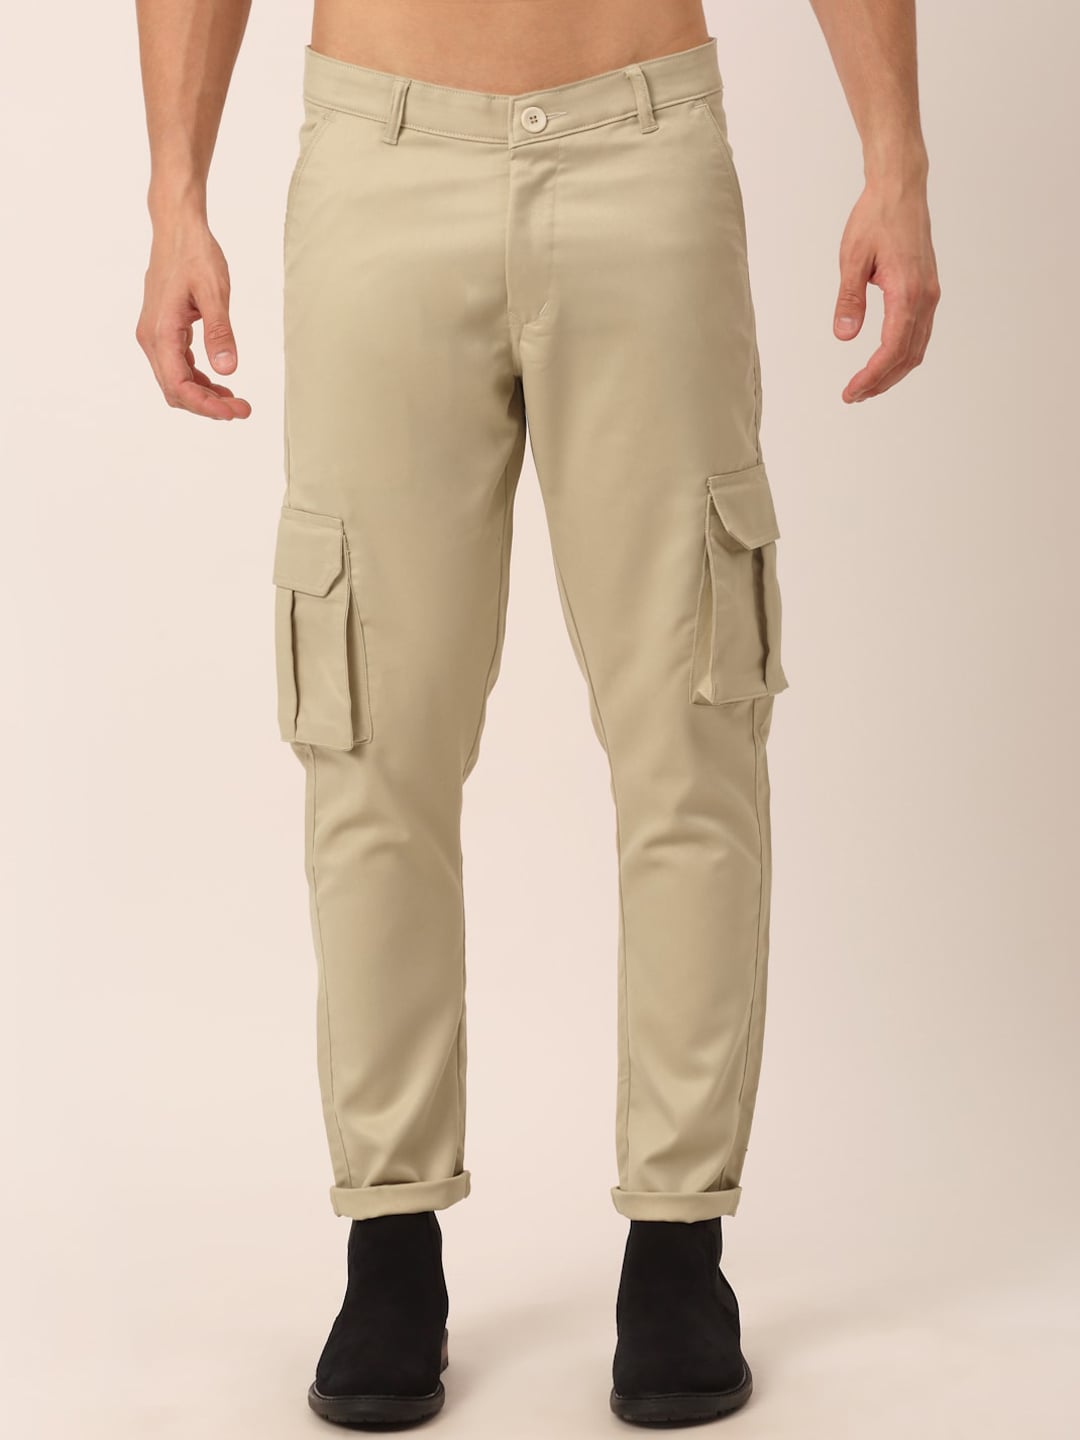 JAINISH Men Cream-Coloured Smart Slim Fit Pure Cotton Cargos Trousers ...